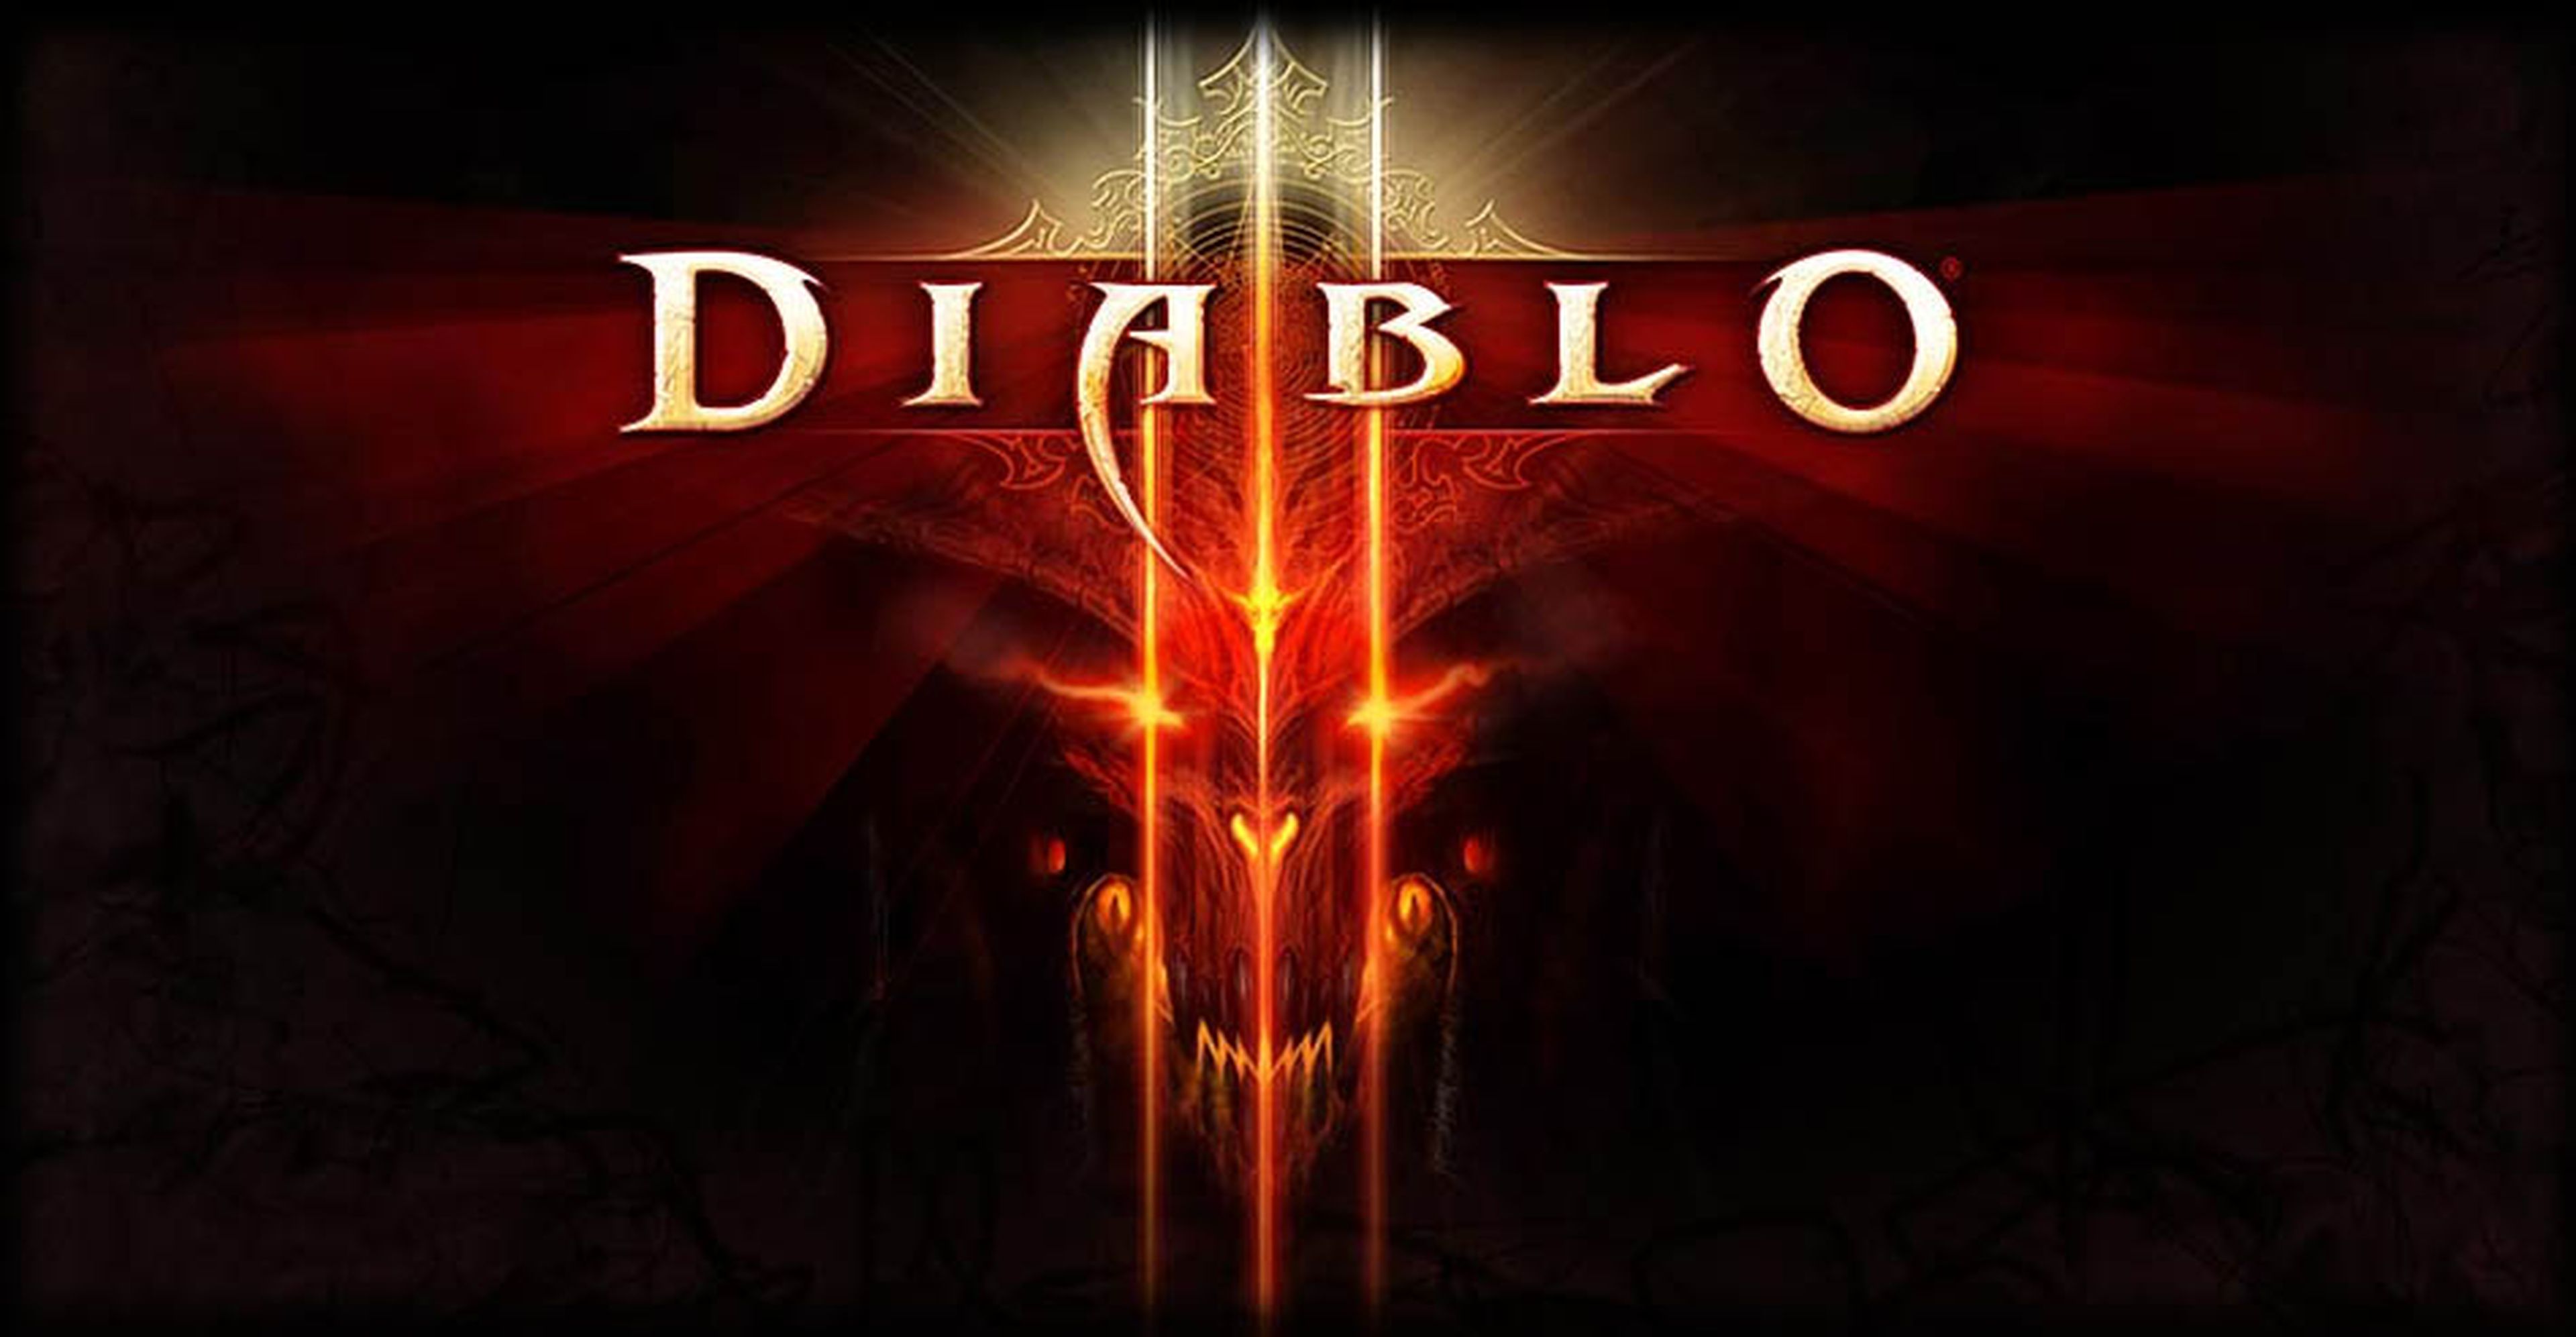 Diablo III encuesta a sus usuarios sobre una nueva expansión